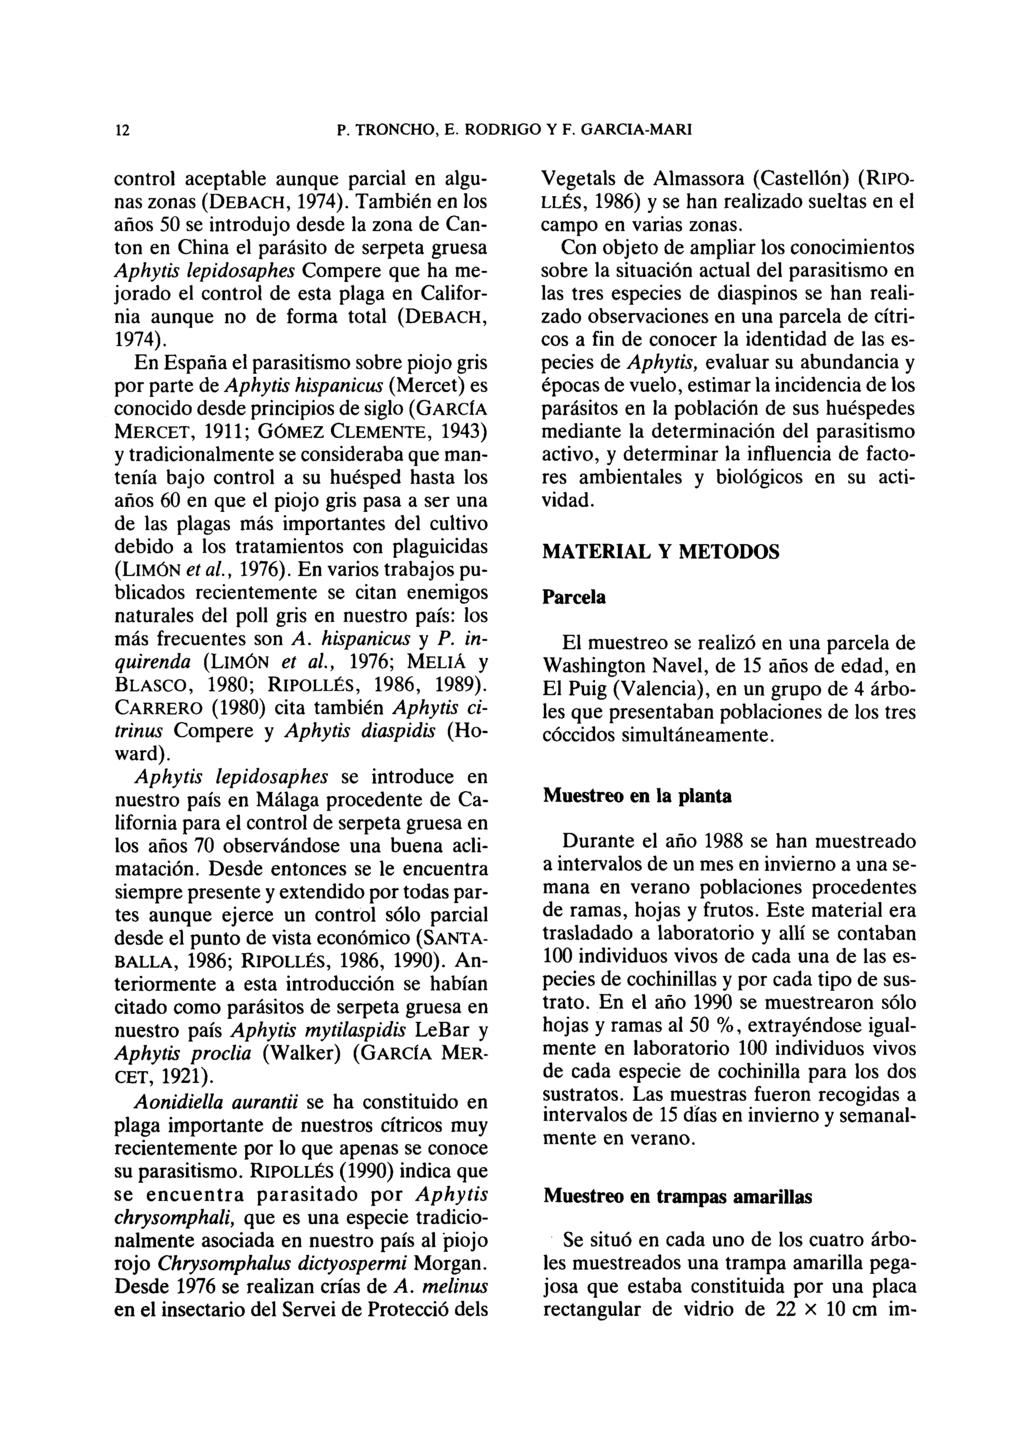 control aceptable aunque parcial en algunas zonas (DEBACH, 1974).